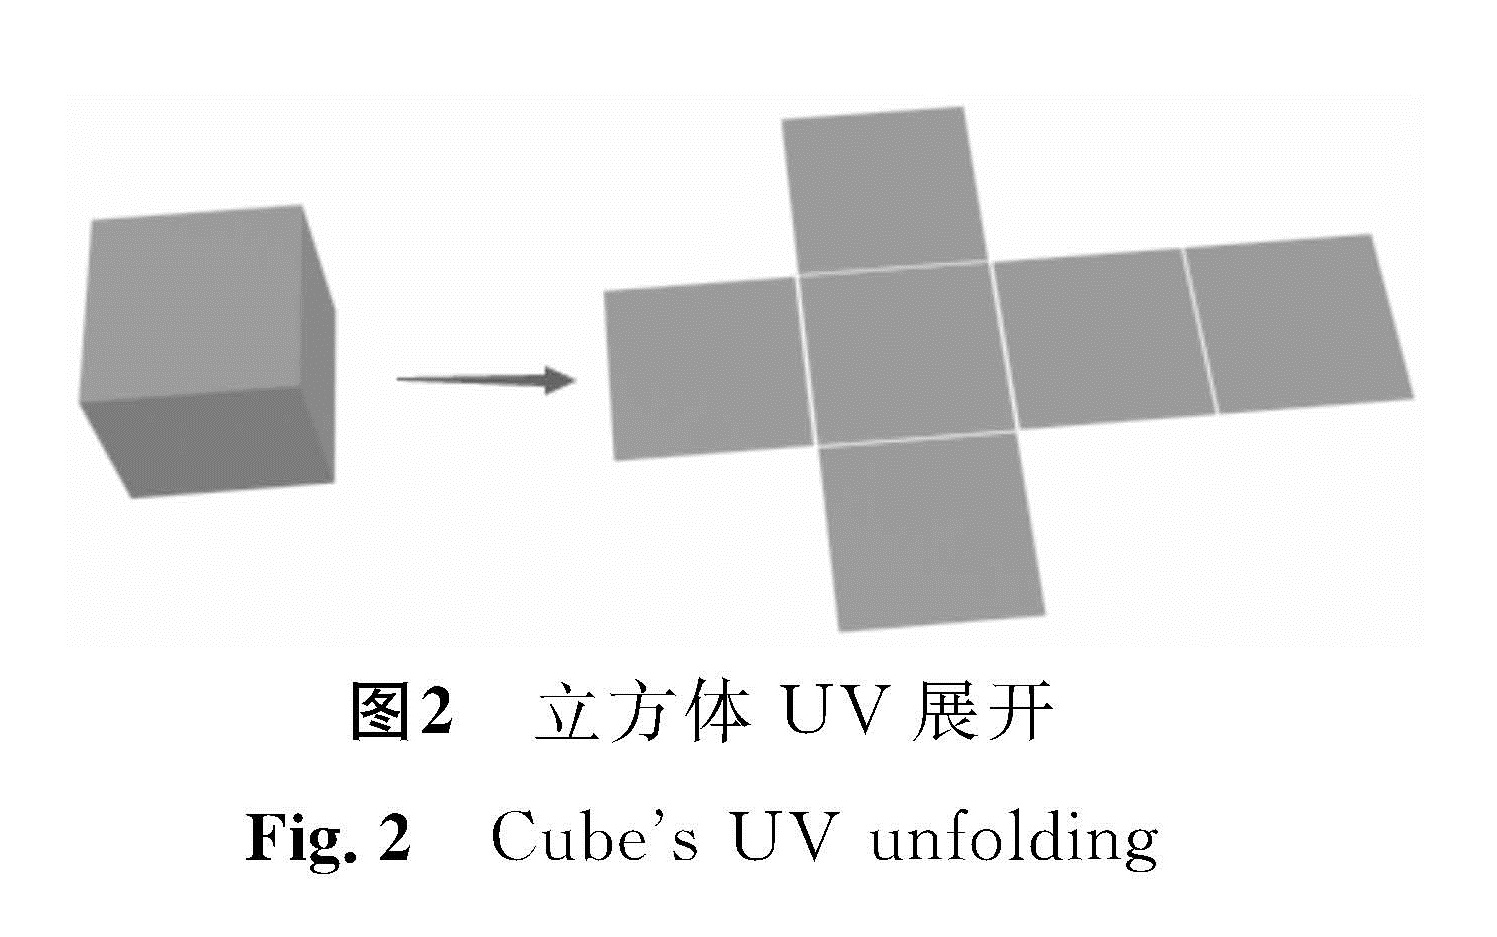 图2 立方体UV展开<br/>Fig.2 Cube's UV unfolding